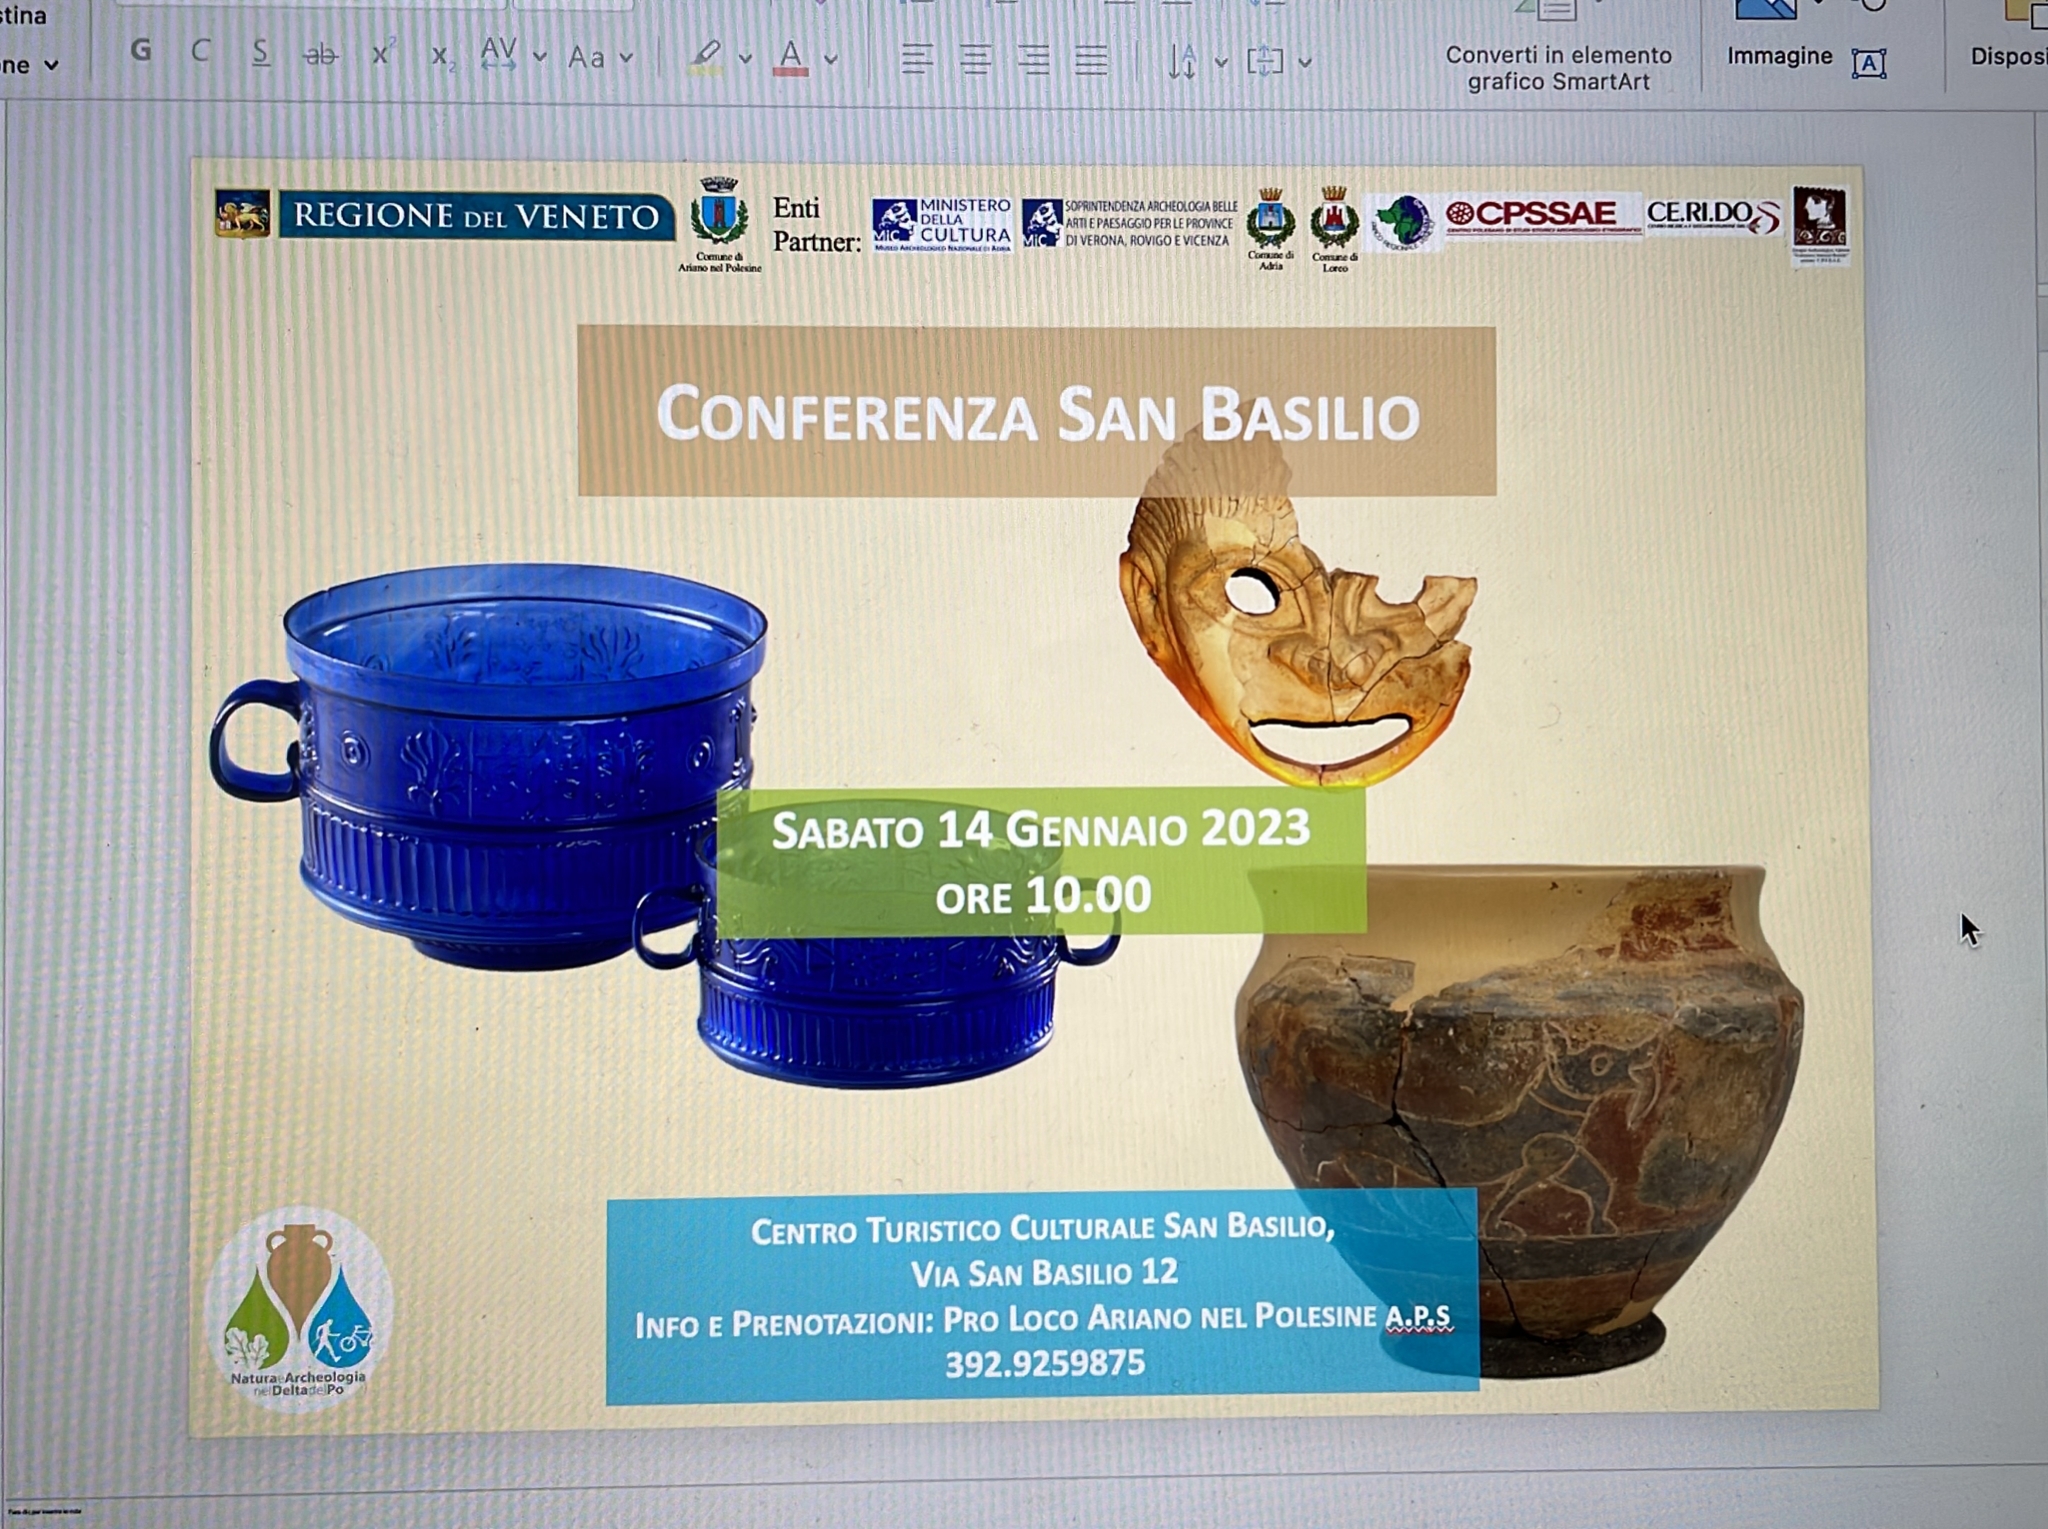 ariano_centro-culturale_conferenza-san-basilio_locandina